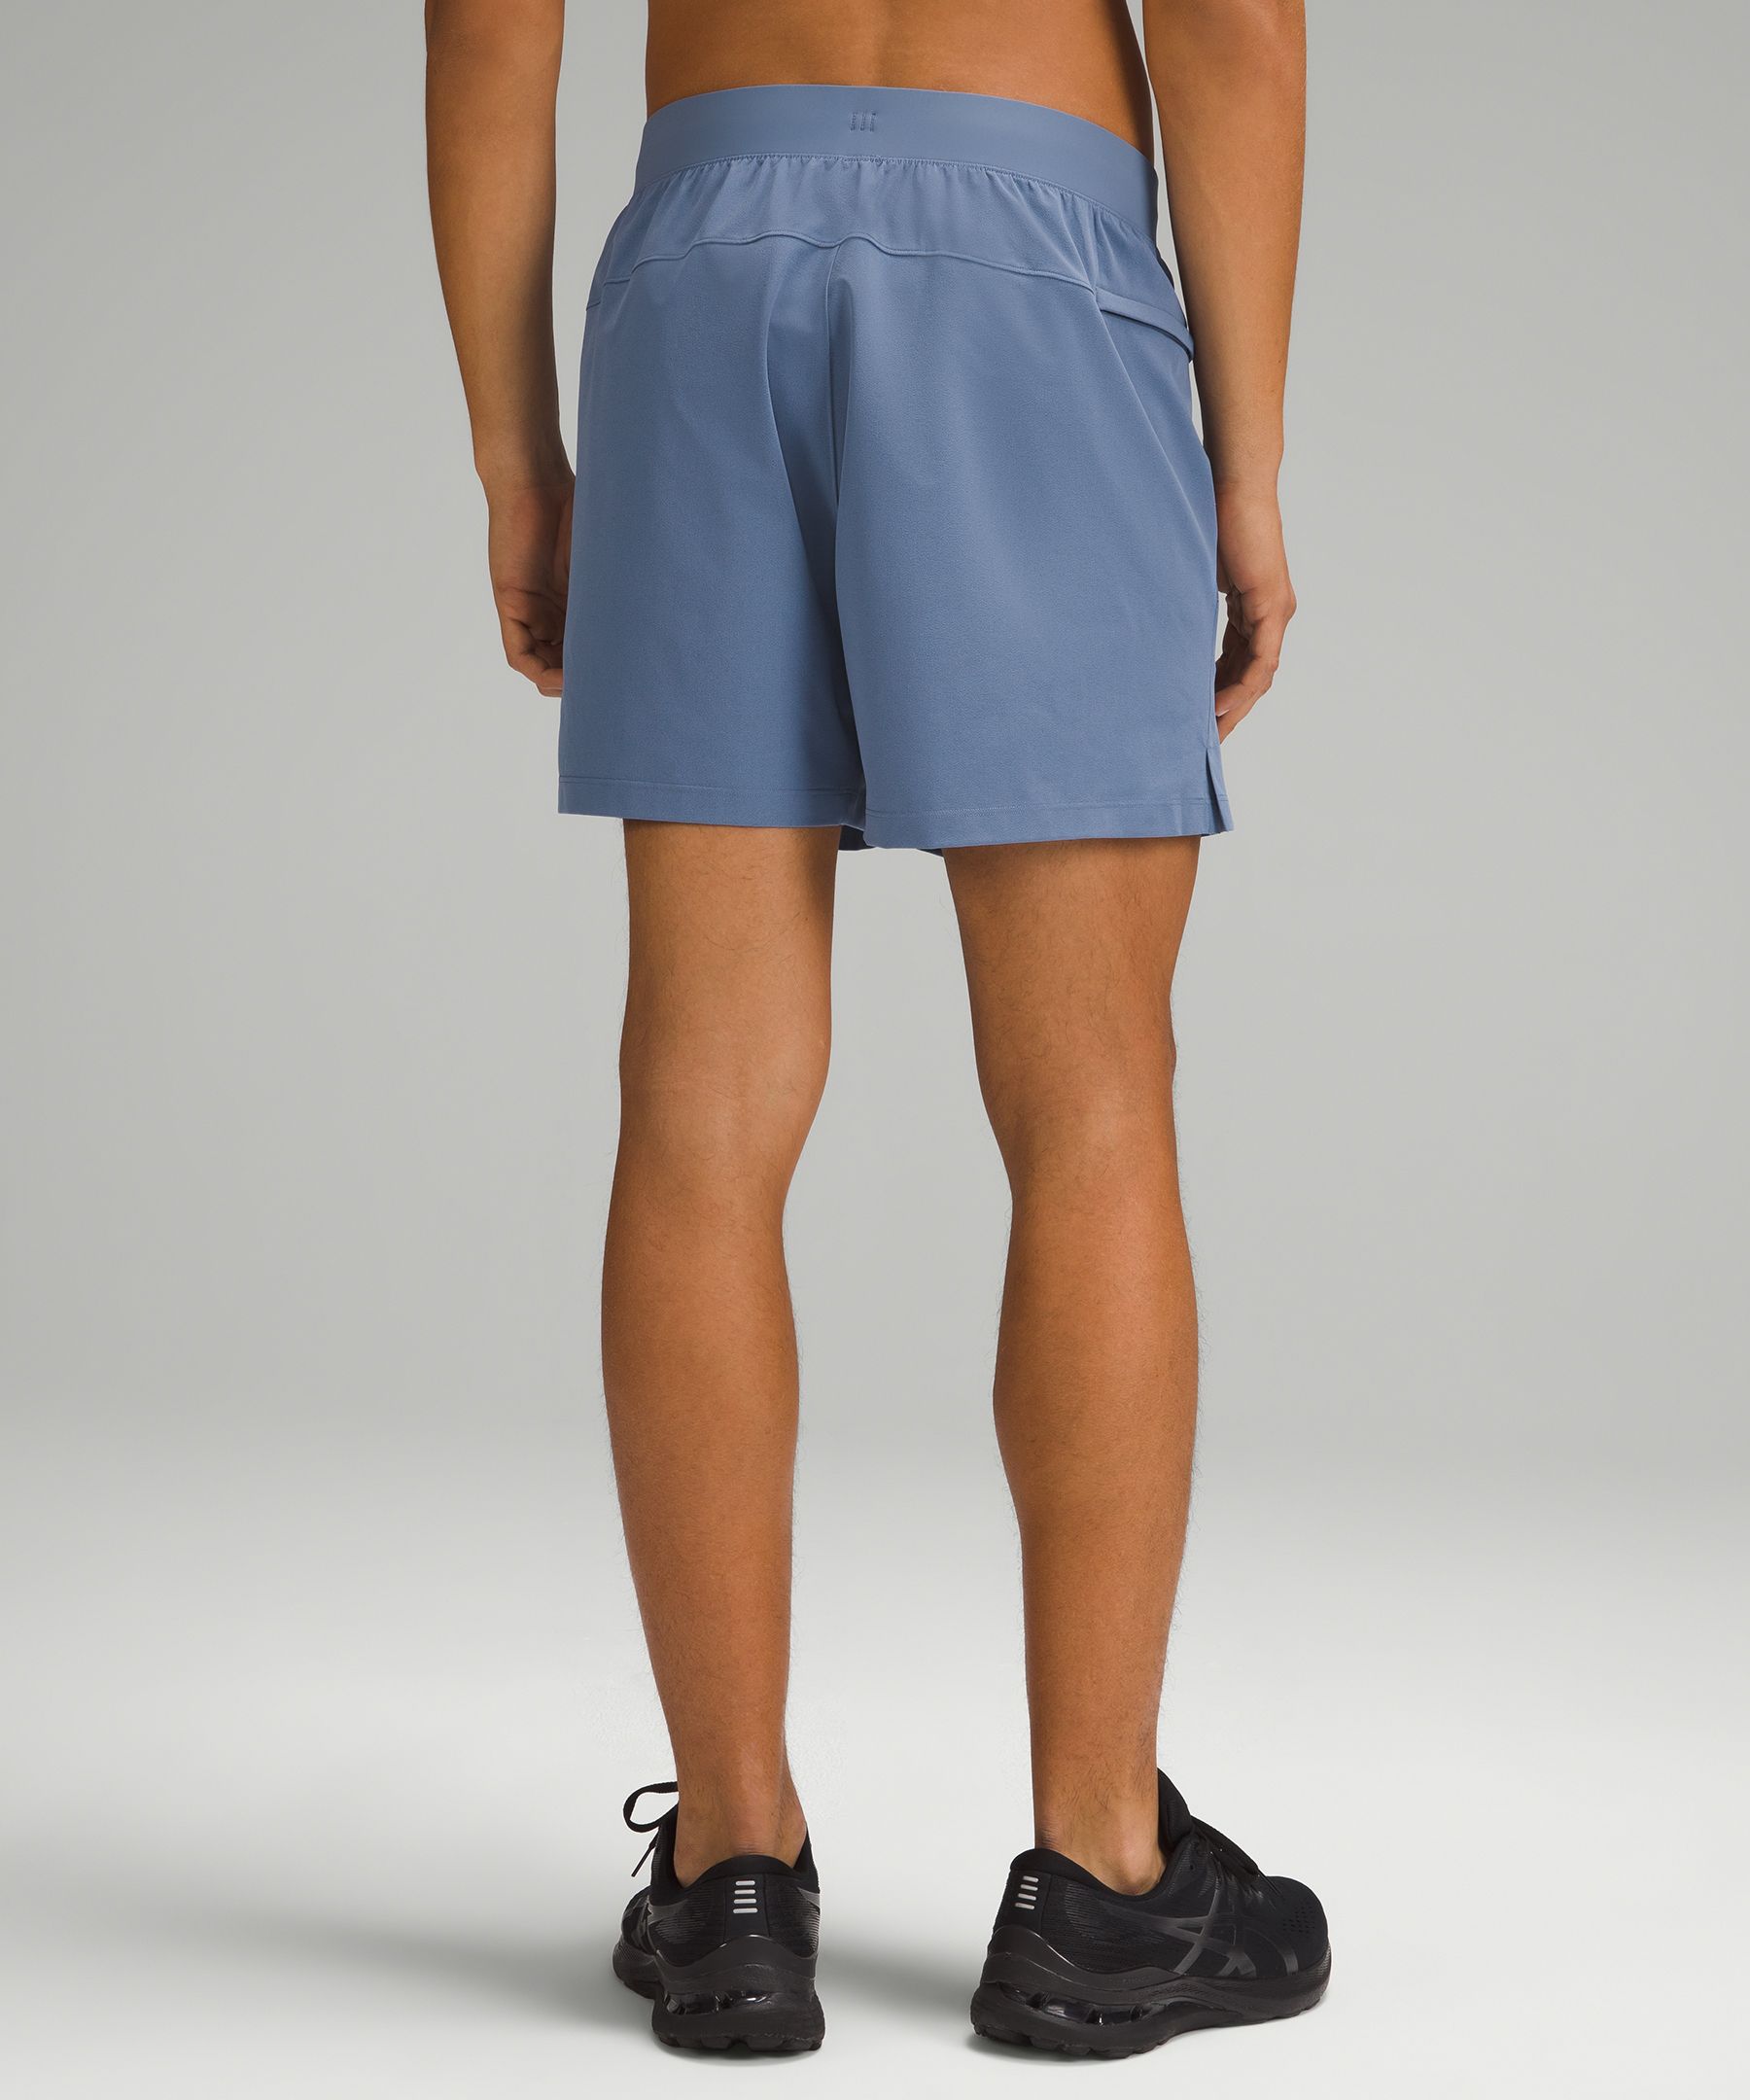 Zeroed Linerless Short 5" | Men's Shorts